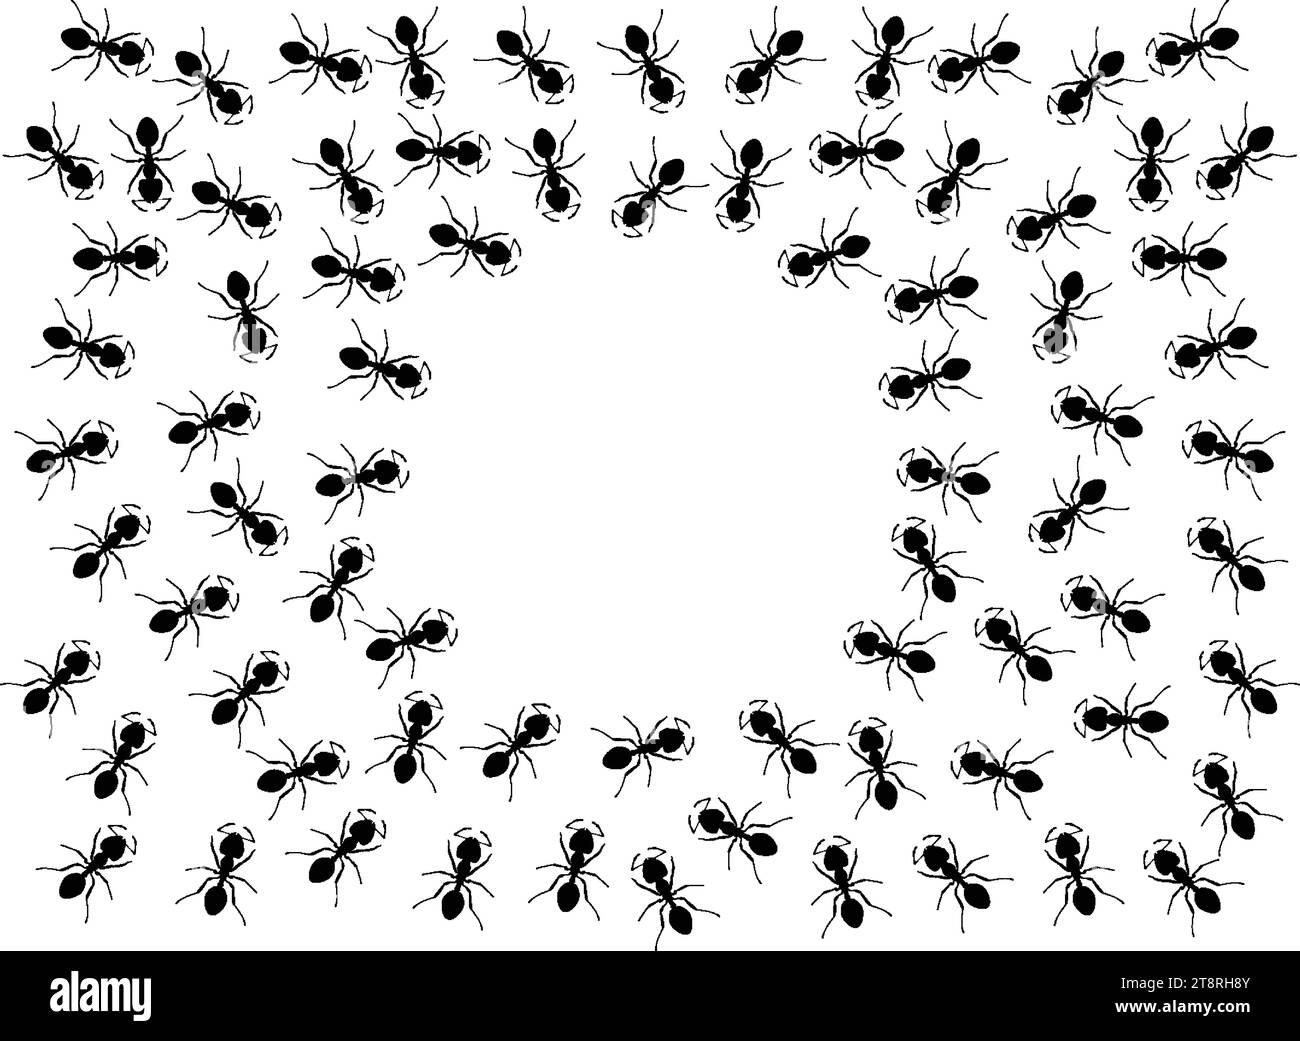 Insectes insectes fourmis emmet pismire bannière Vector icône icônes signe amusant drôle Une ligne de travailleurs fourmis marchant recherche Silhouette bannière lo Illustration de Vecteur